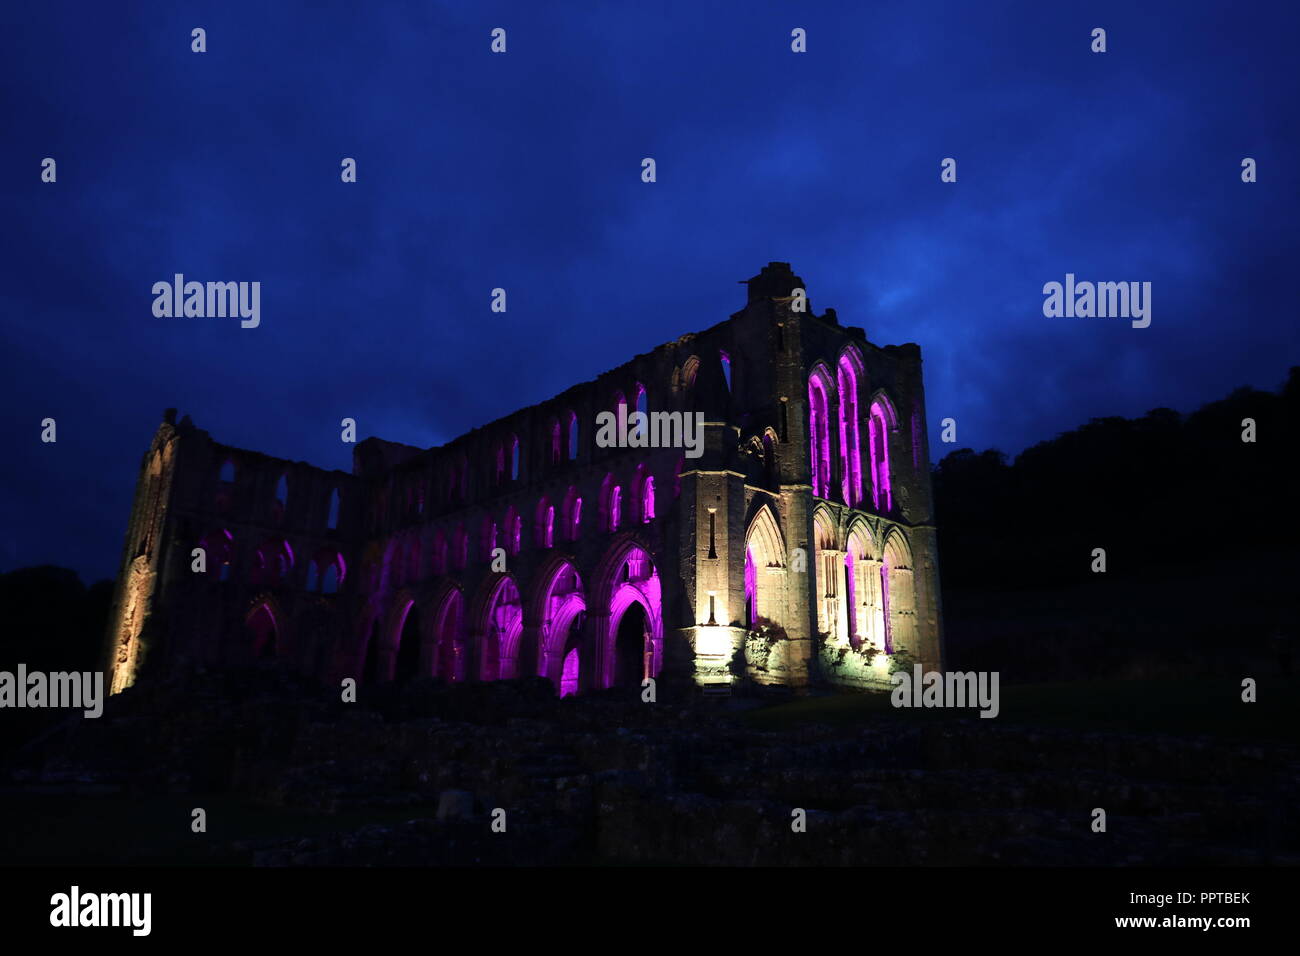 Rievaulx Abbey gebadet in farbiges Licht vor der leuchtenden Rievaulx, drei Nacht Licht und Installation am 11. sound Abtei Ruinen in North Yorkshire. Stockfoto